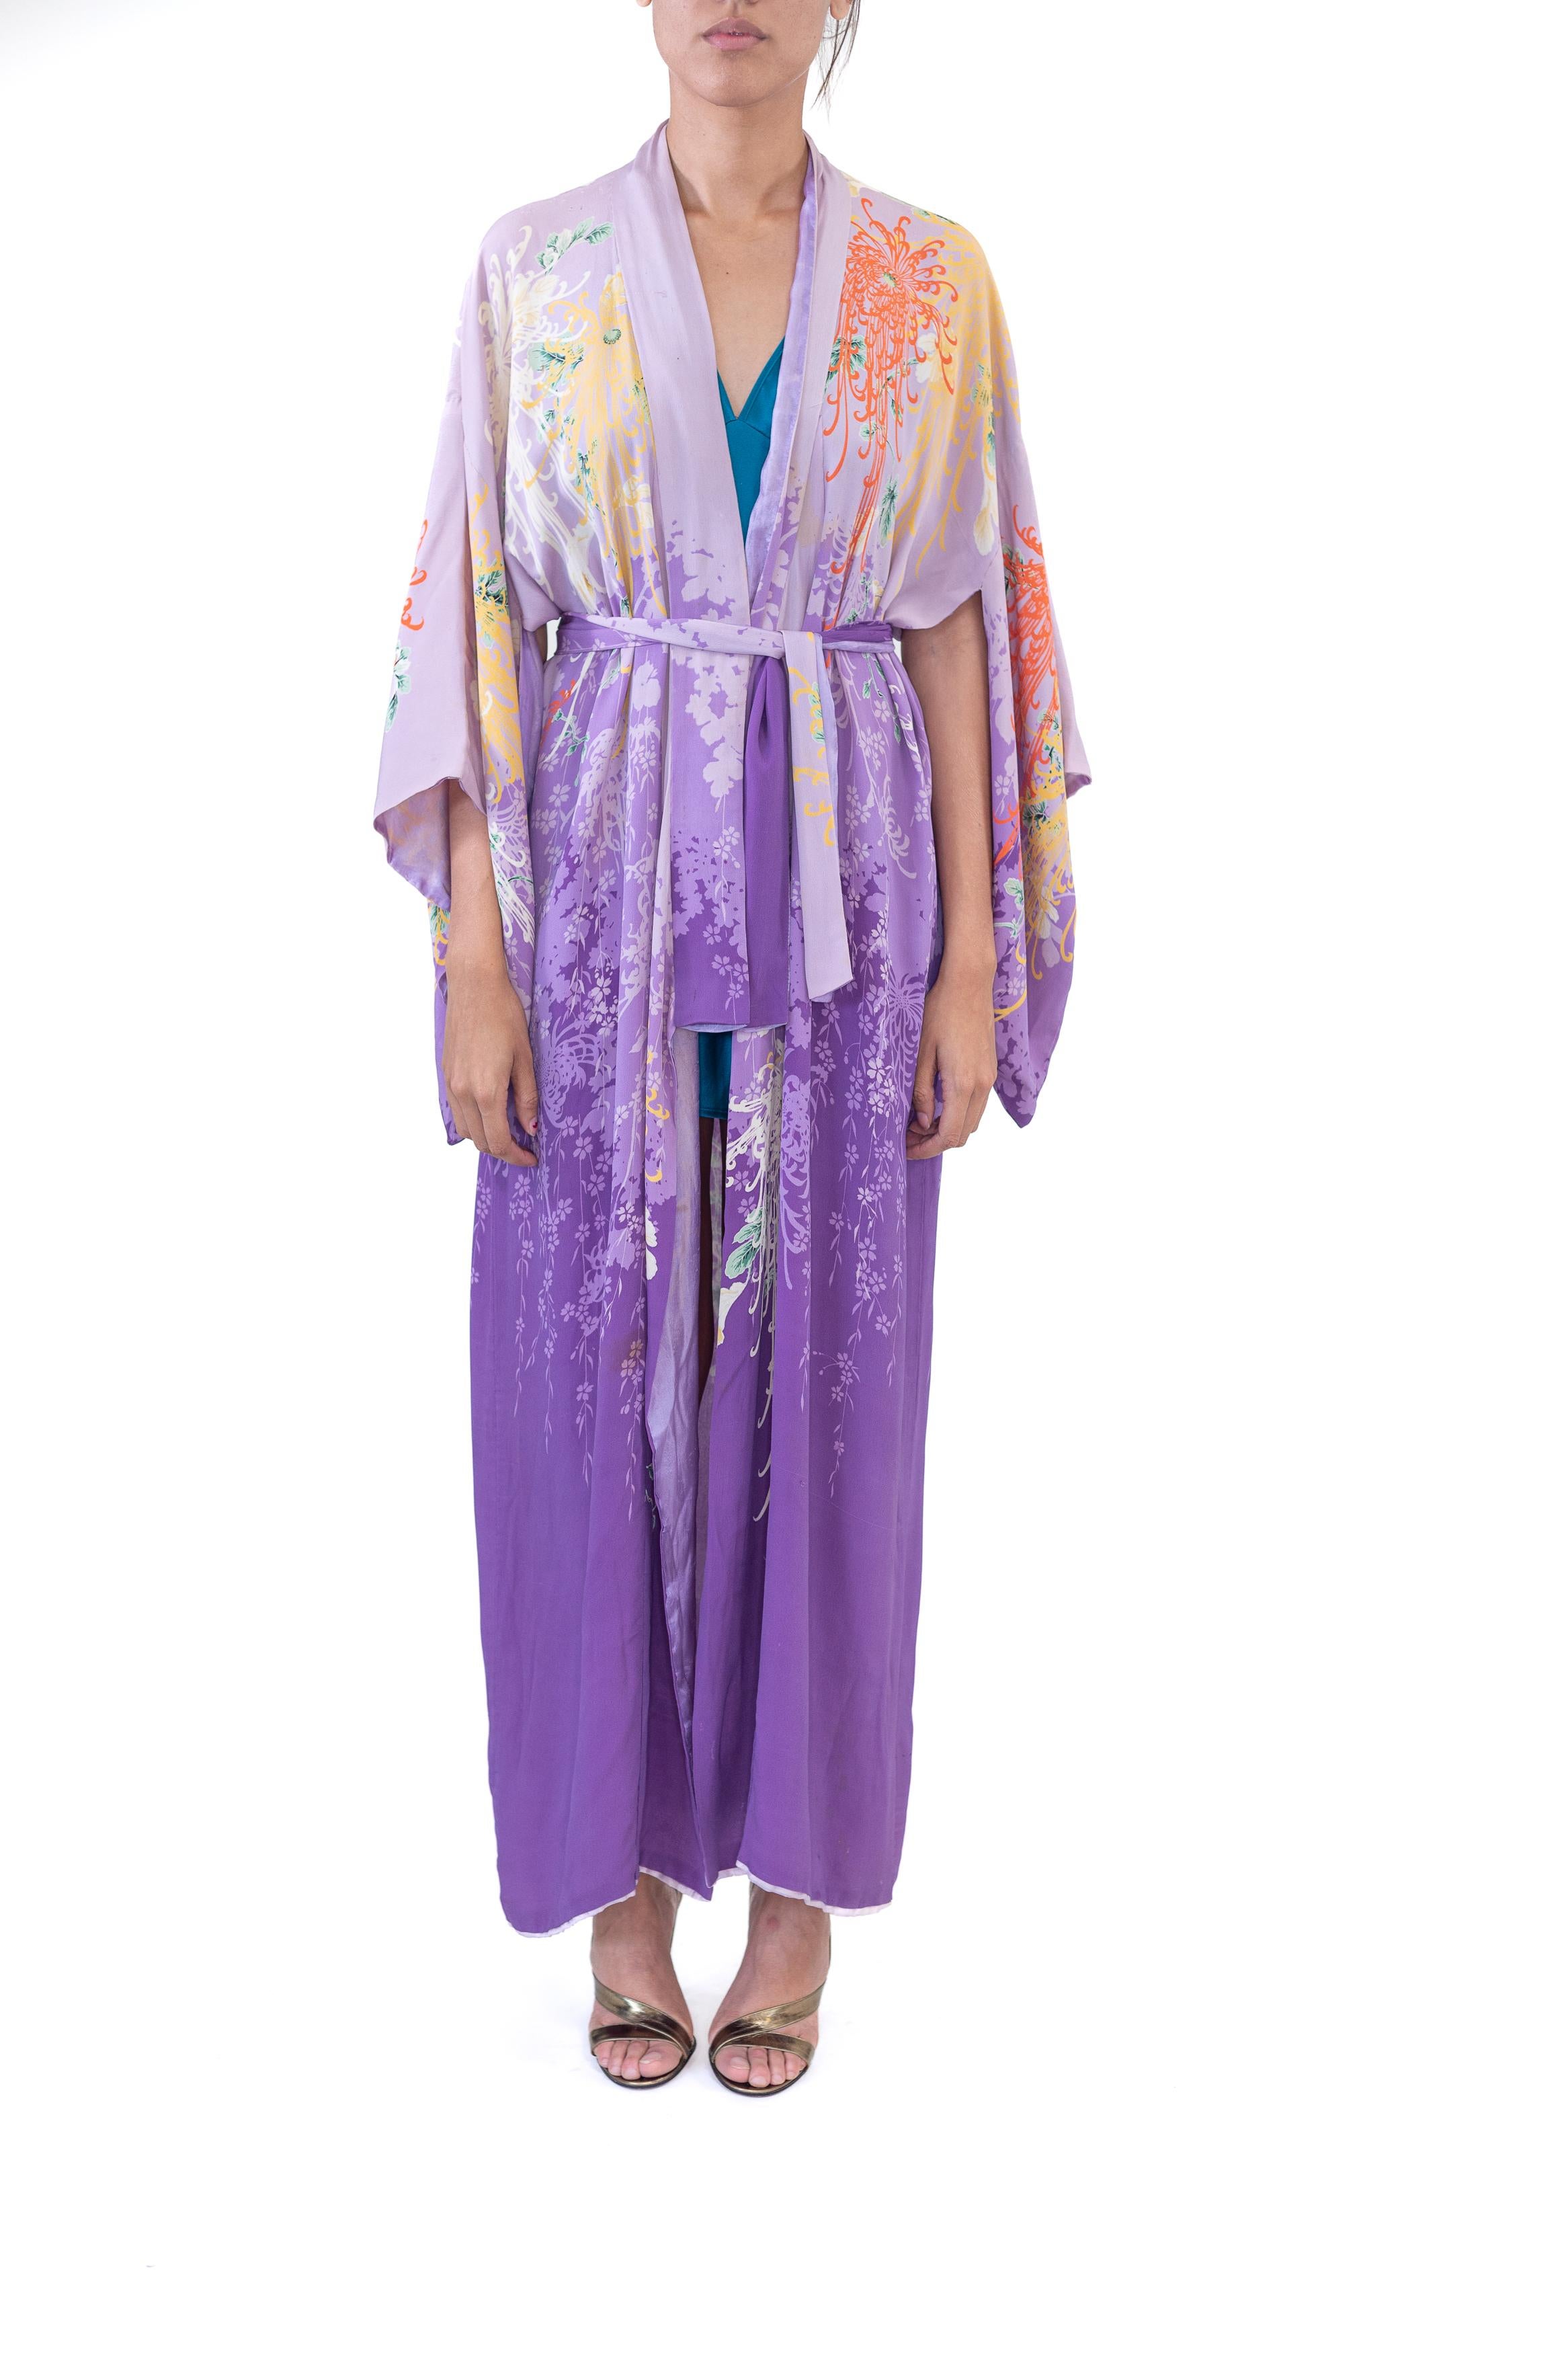 Dieser Kimono ist ebenso selten wie atemberaubend schön. Also mussten wir es haben. Normalerweise führen wir bei Morphew nur Stücke in tadellosem Zustand. Doch die Schönheit dieses Drucks lässt uns über die Alterserscheinungen und Flecken auf diesem